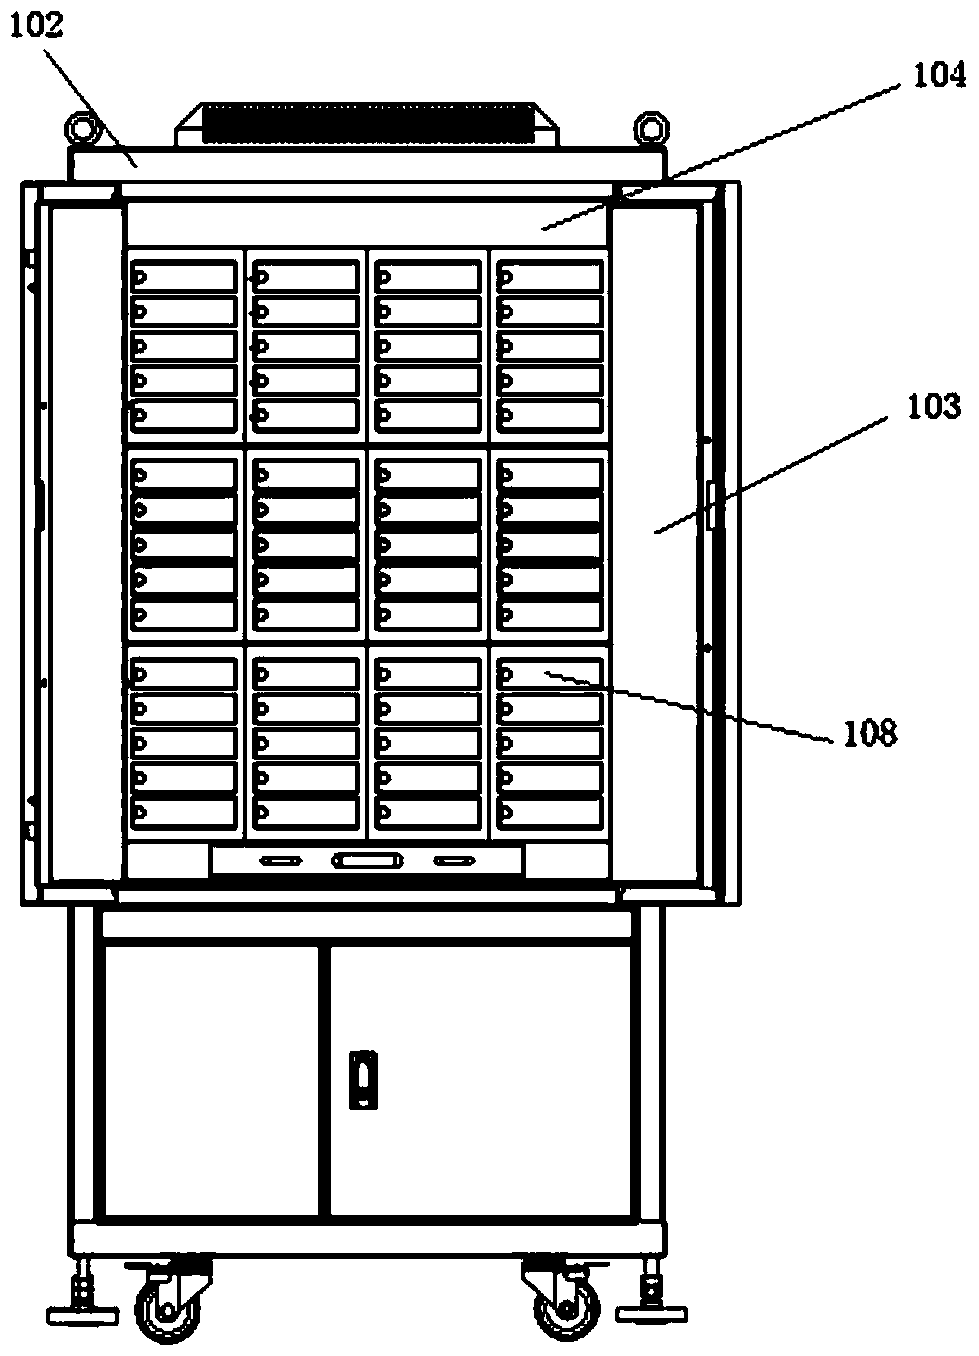 Hard disk storage cabinet